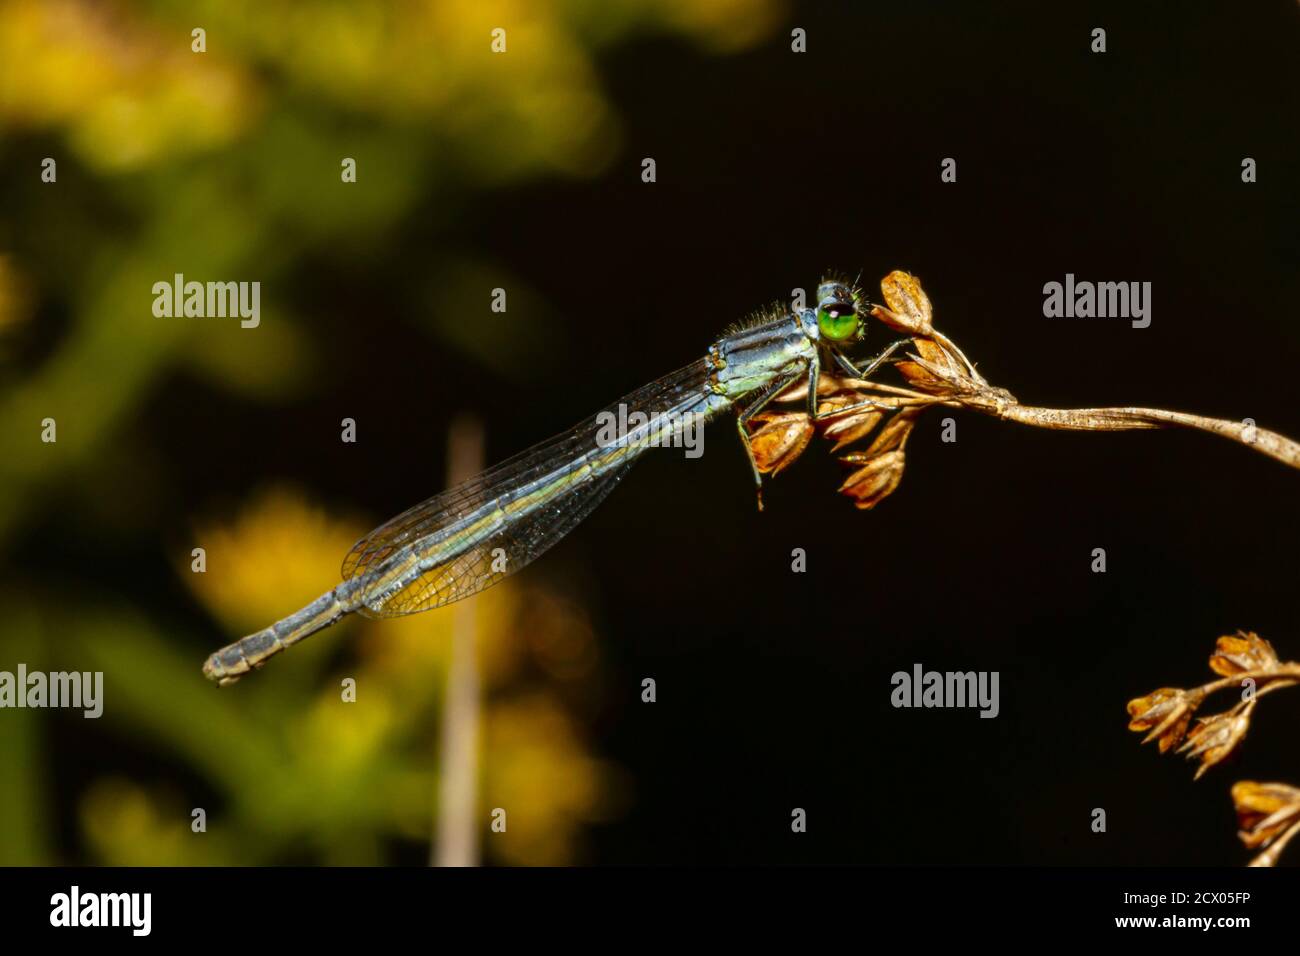 Primo piano immagine macro isolata di una posita di Ischnura (fragile forktail) una mosca che misura circa 25 mm ed è originaria degli Stati Uniti orientali. Questa polvere Foto Stock